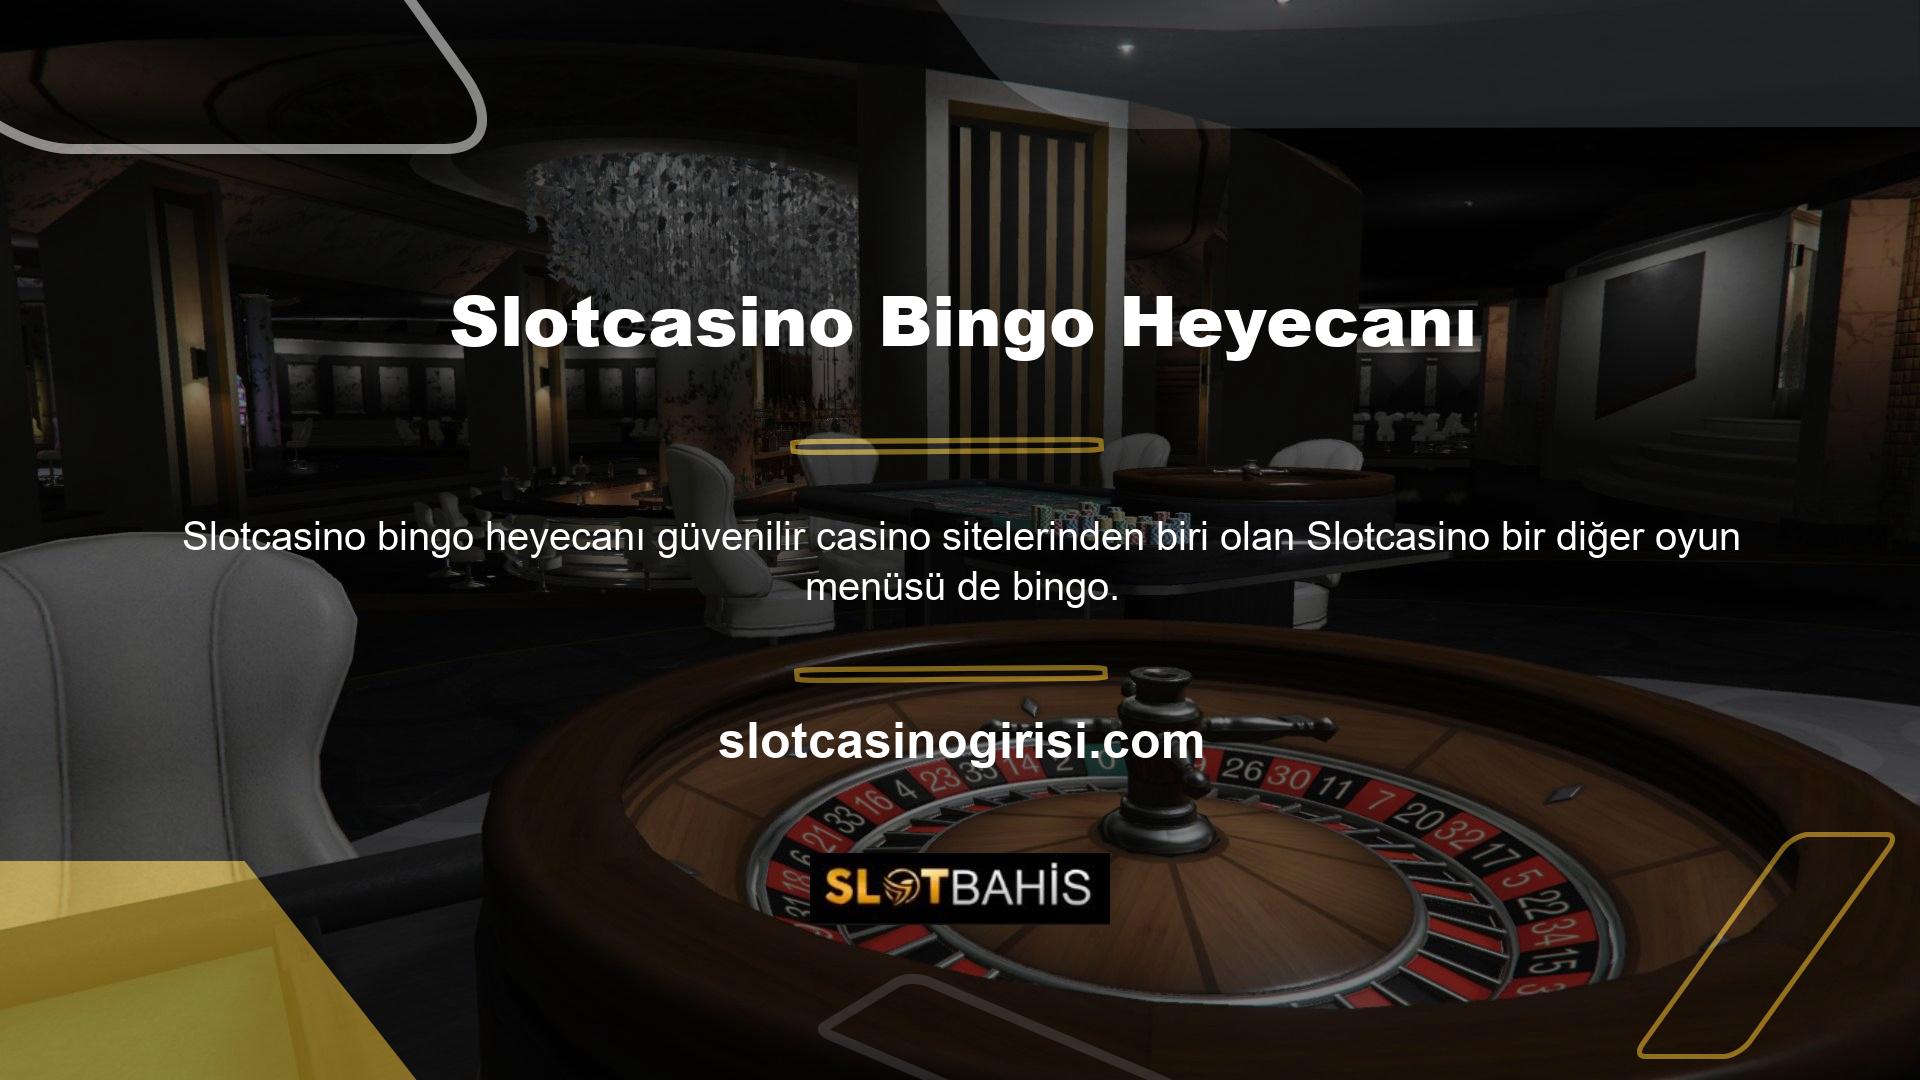 Bahis/casino siteleri bingo tutkunları için büyük bir heyecan kaynağıdır